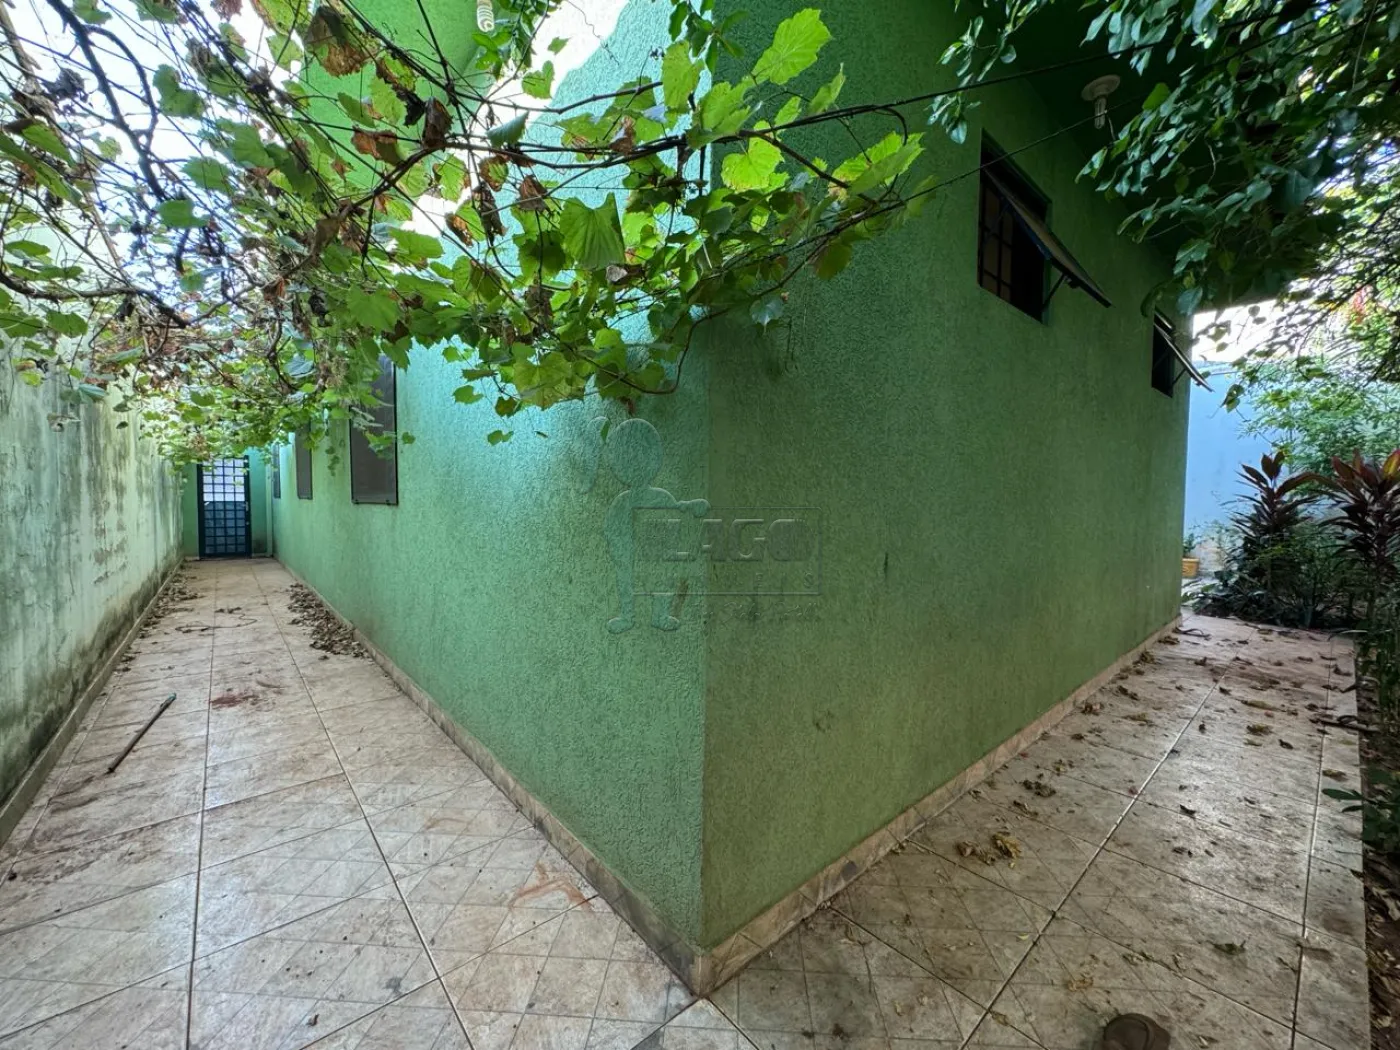 Comprar Casa / Padrão em Ribeirão Preto R$ 400.000,00 - Foto 17